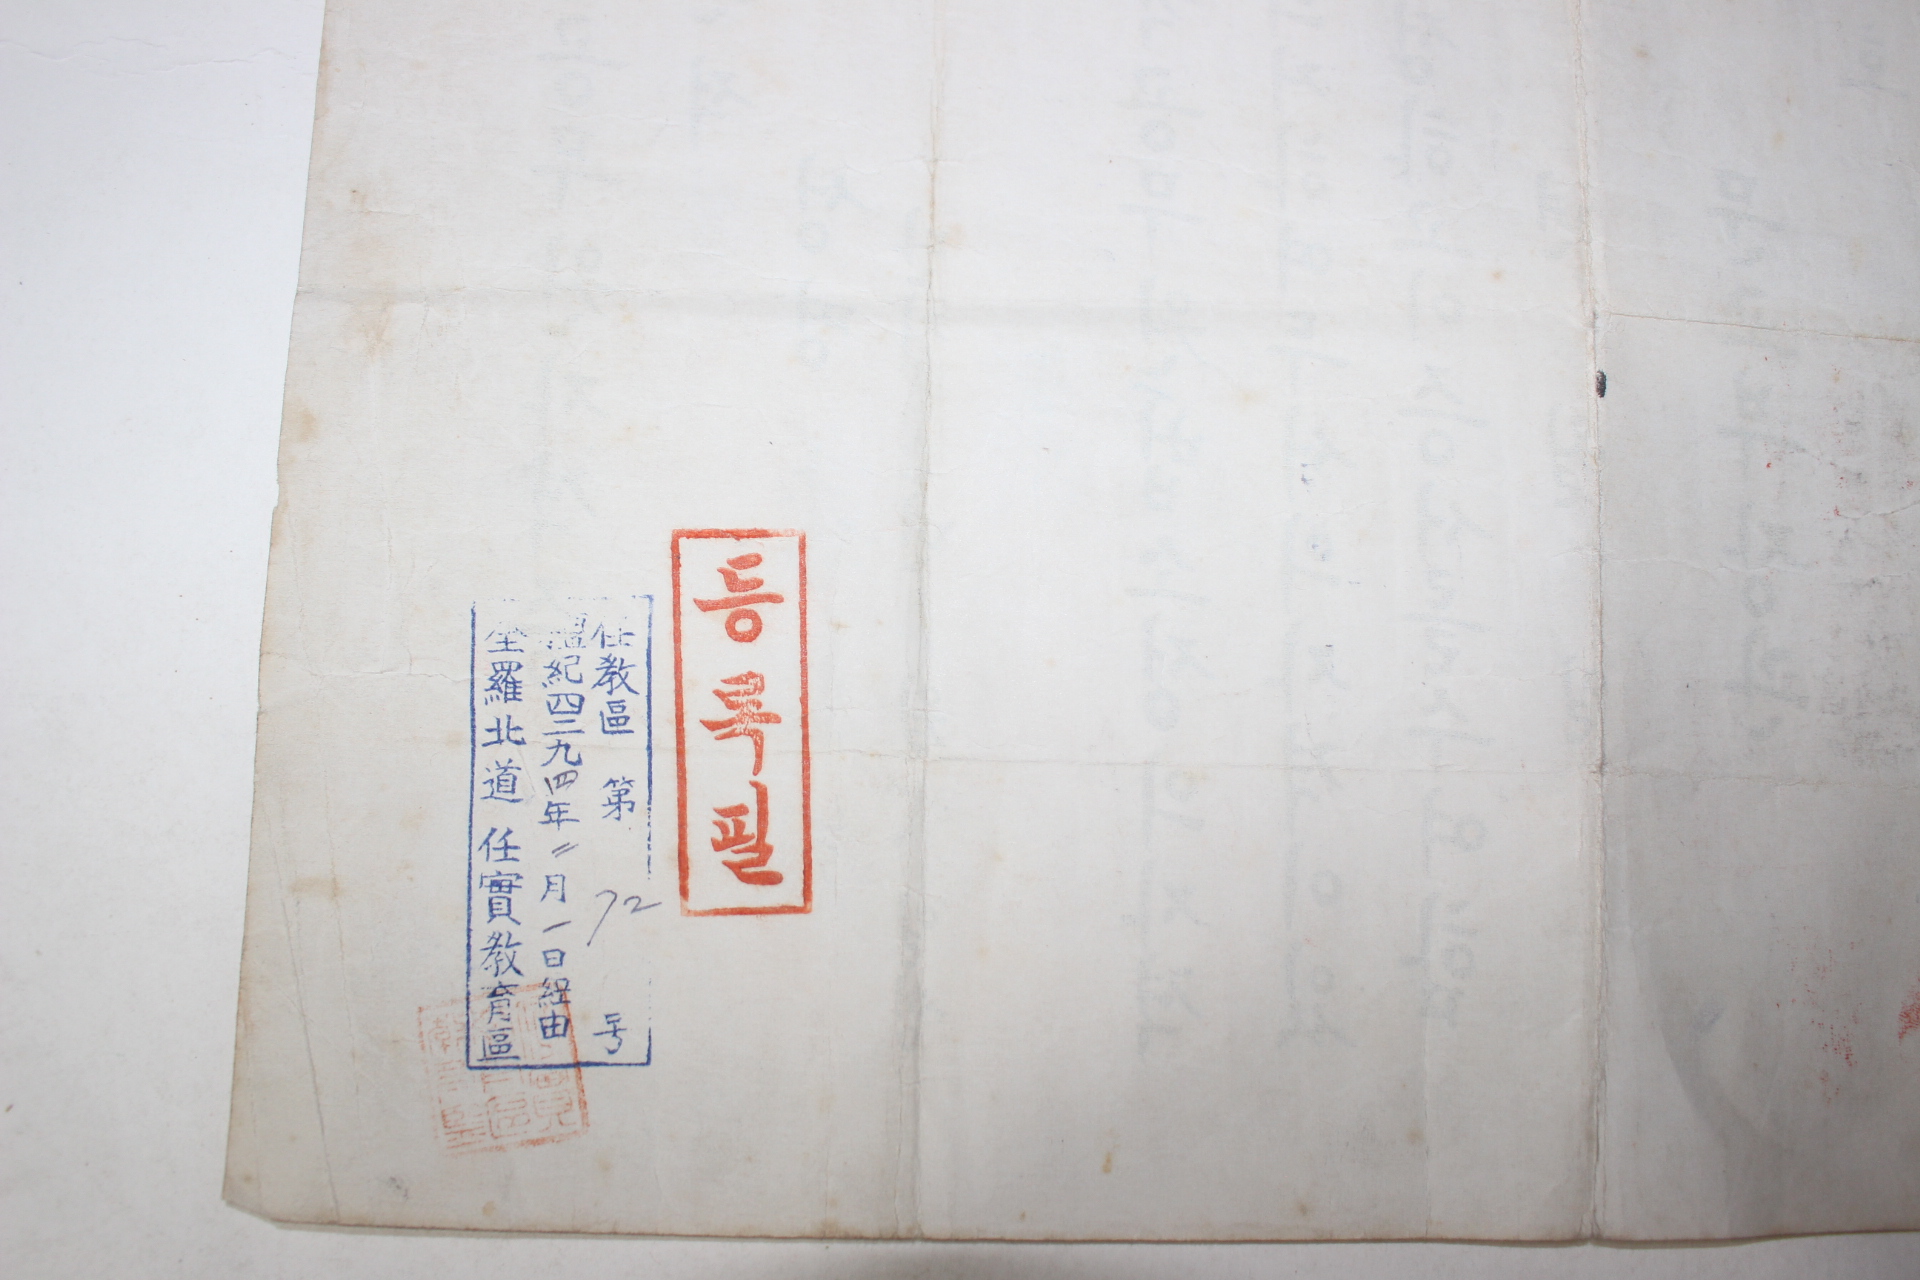 1957년(단기4290년) 문교부장관 교육공무원 자격증